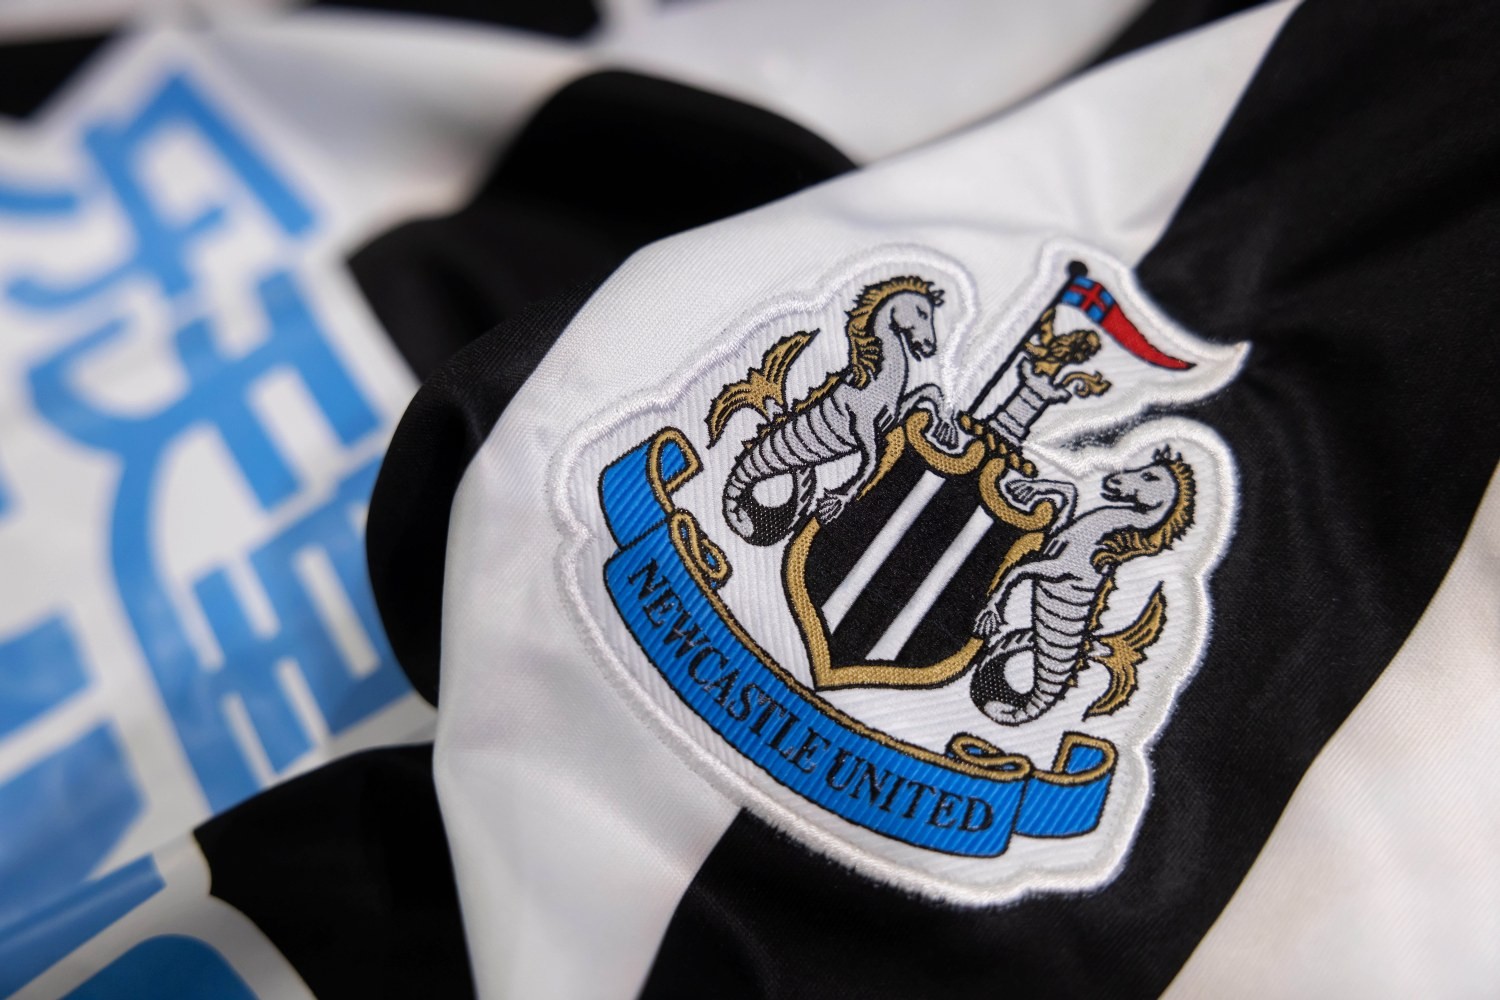 OFICJALNIE: Newcastle United z nowym głównym sponsorem